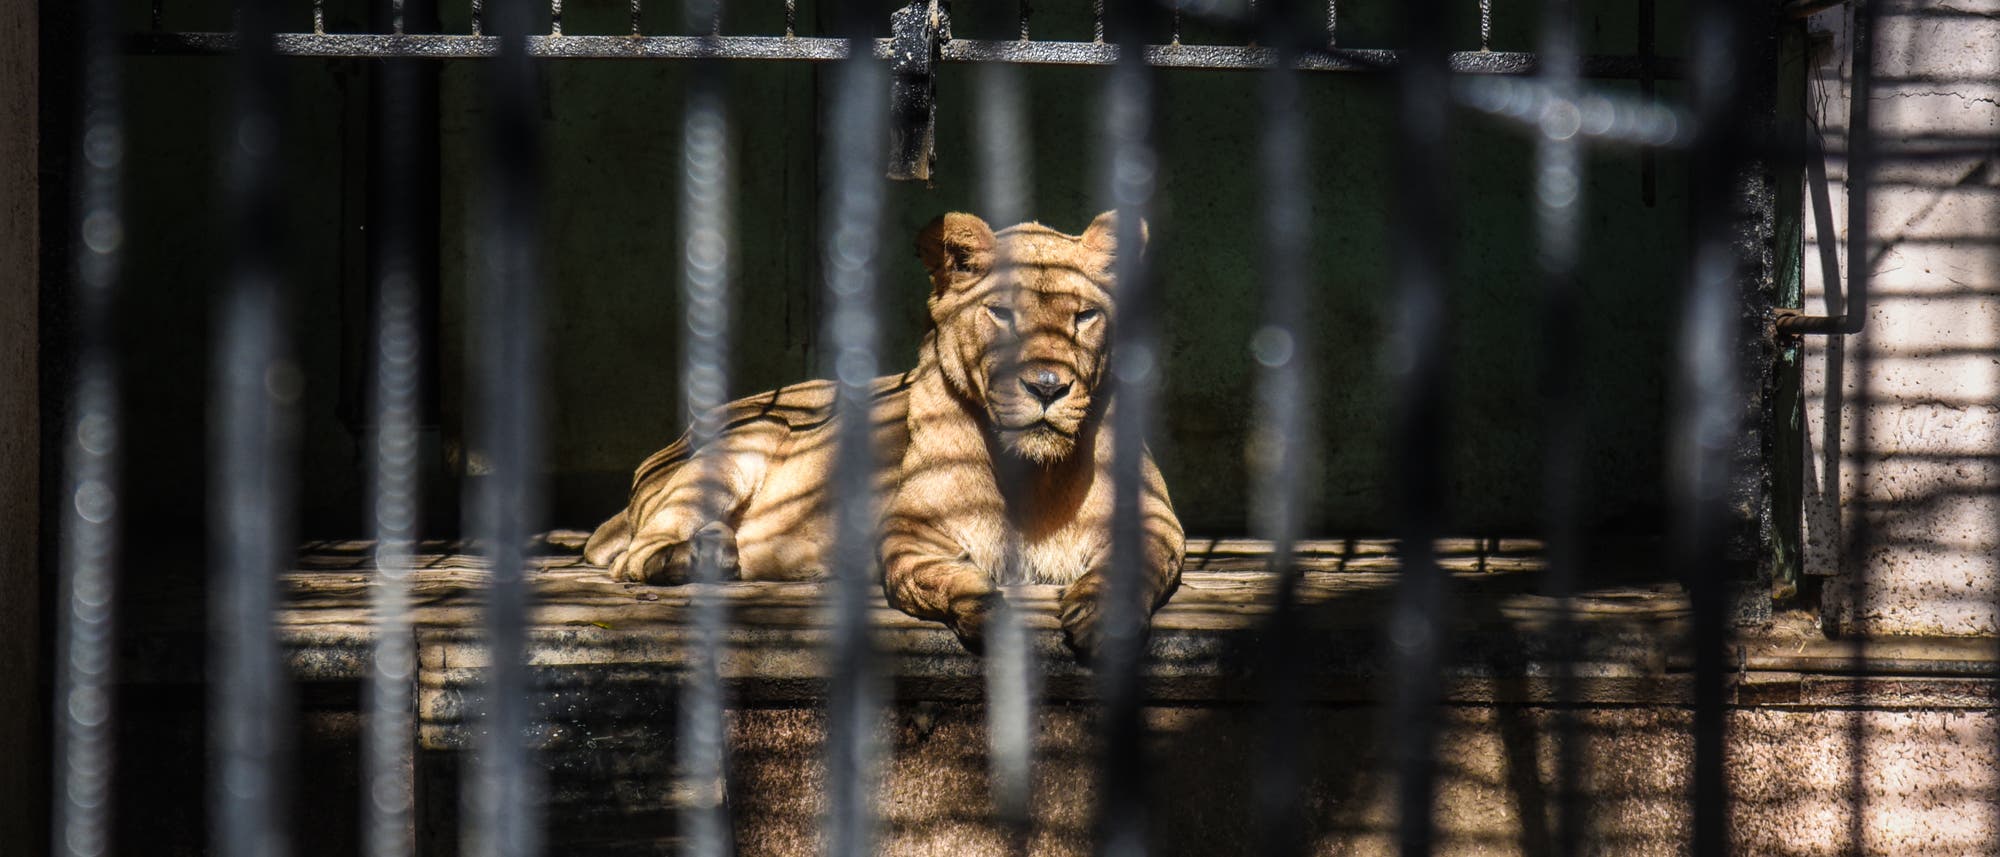 Löwin in einem Käfig